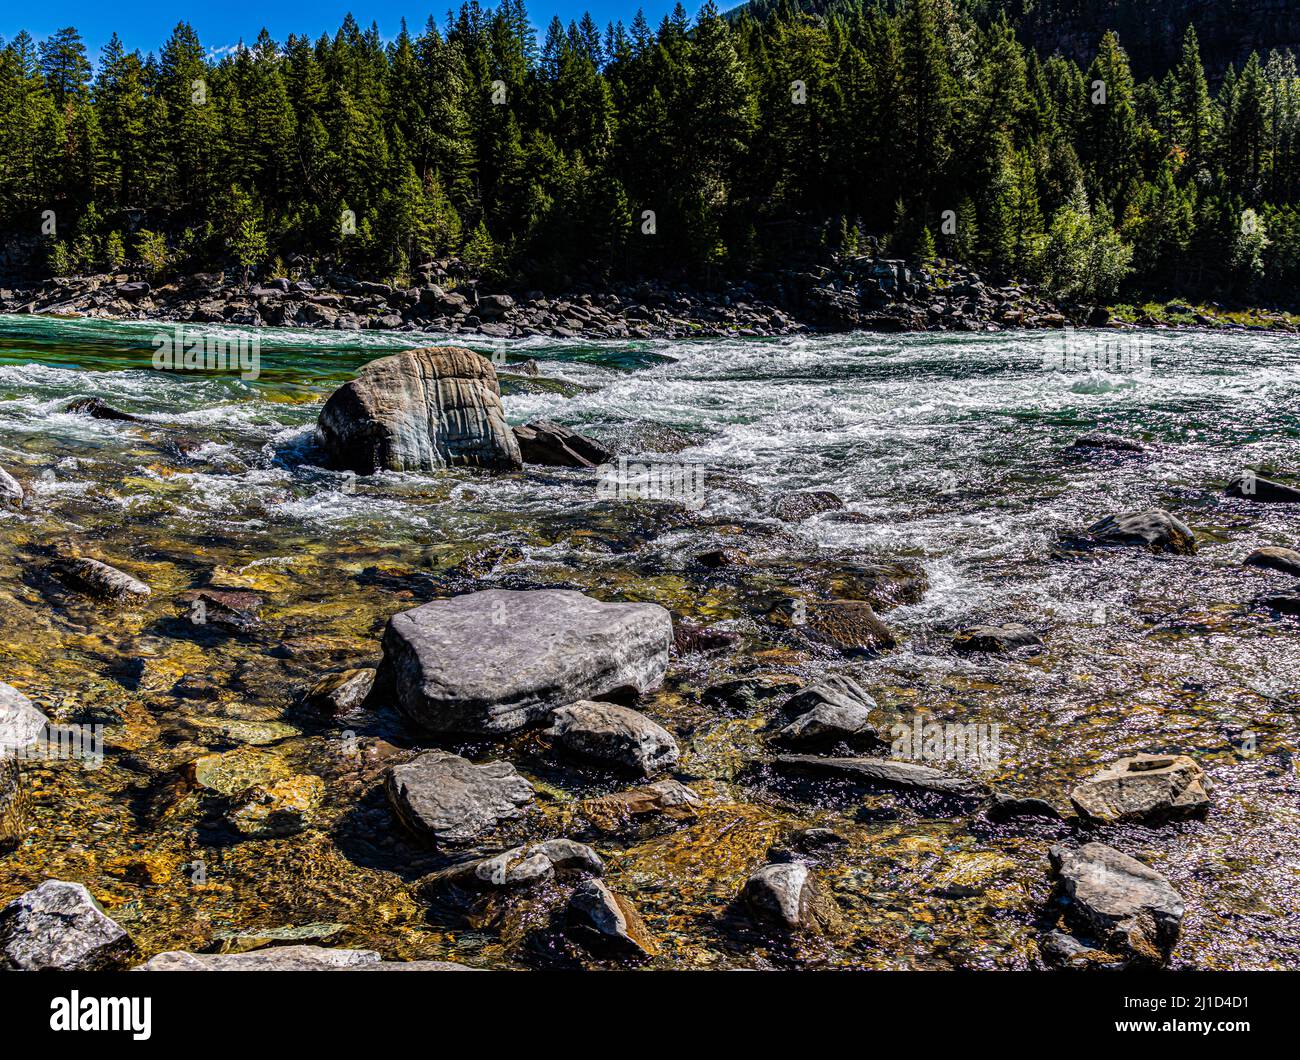 Rapids and Boulders on The Kootenai River, Lincoln County, Montana, USA Stock Photo